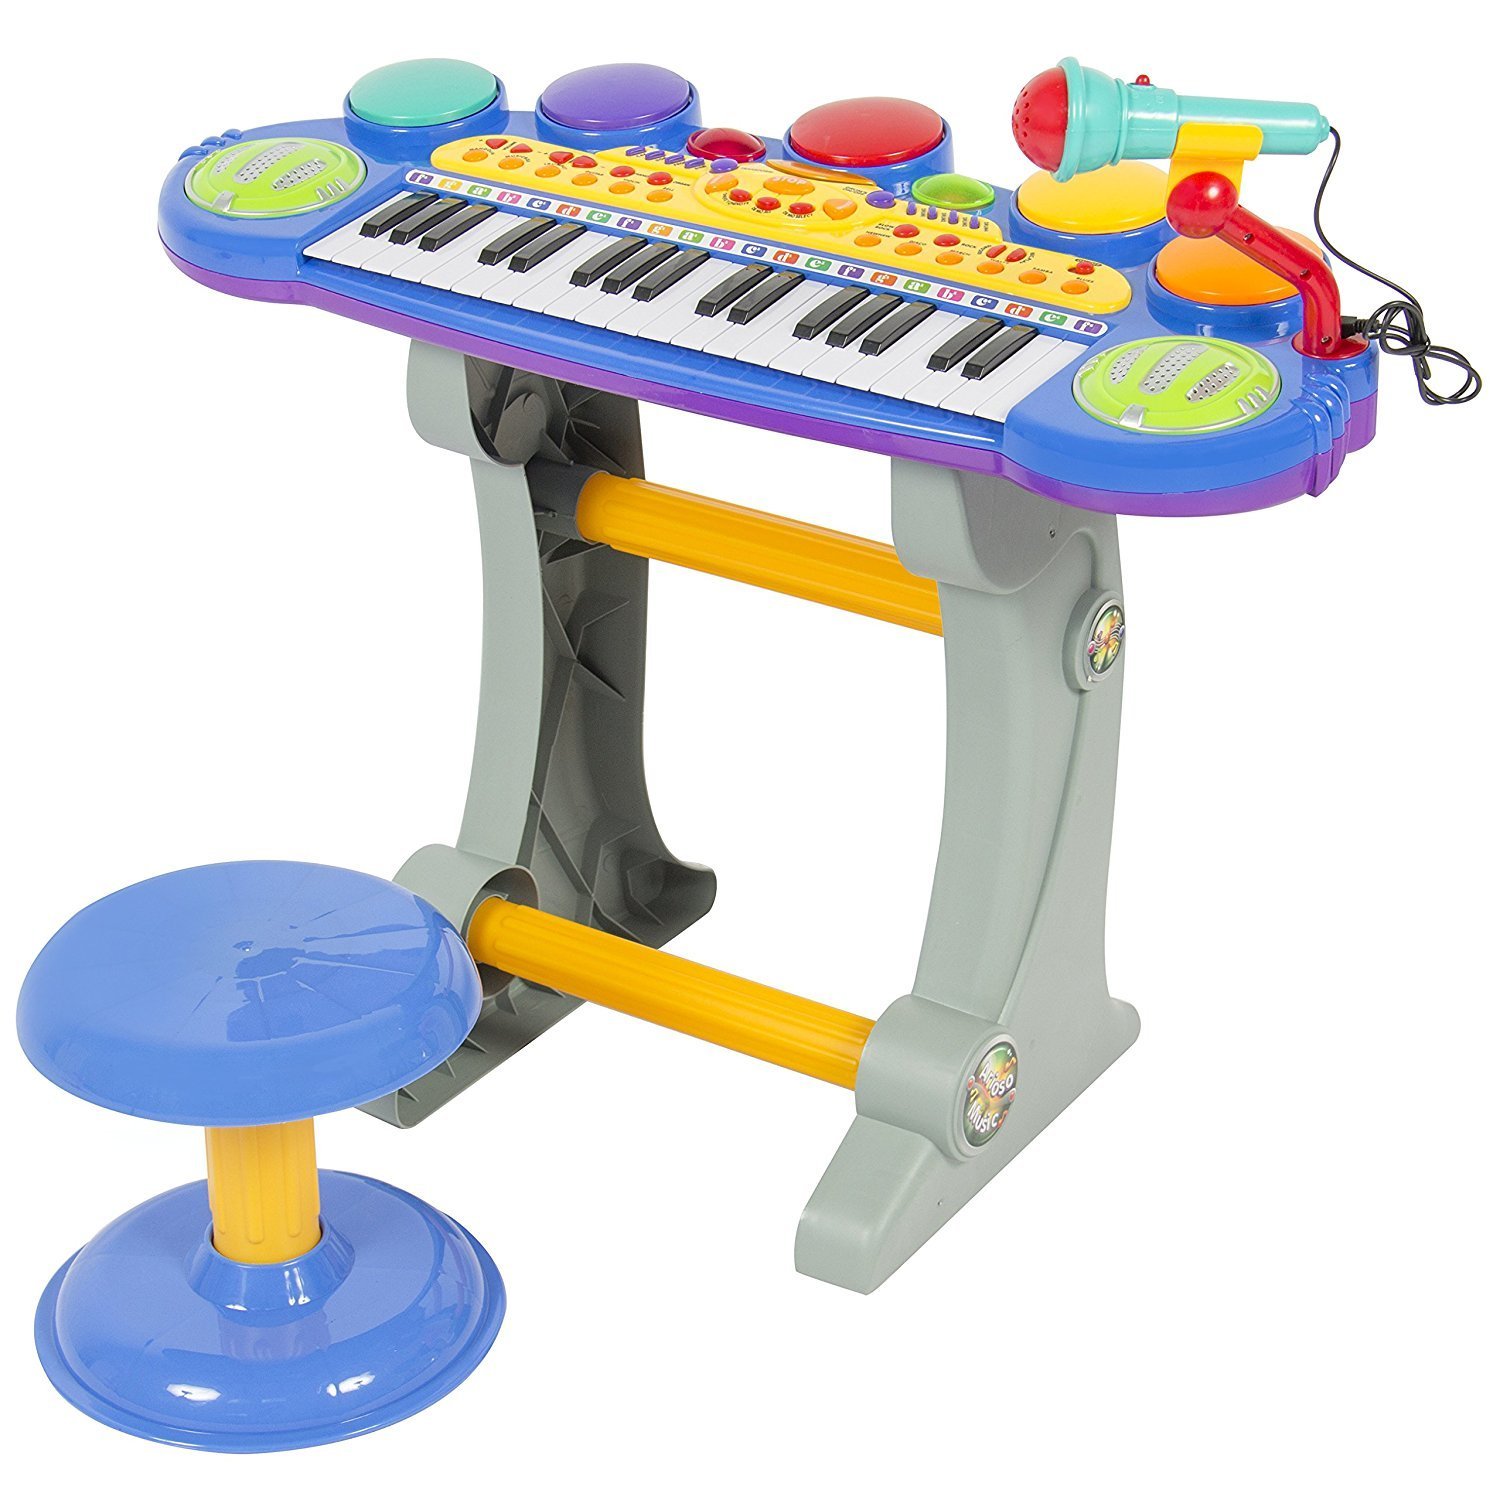 Teclado Infantil Musical Piano 37 Músicas com Microfone Rosa - Fun